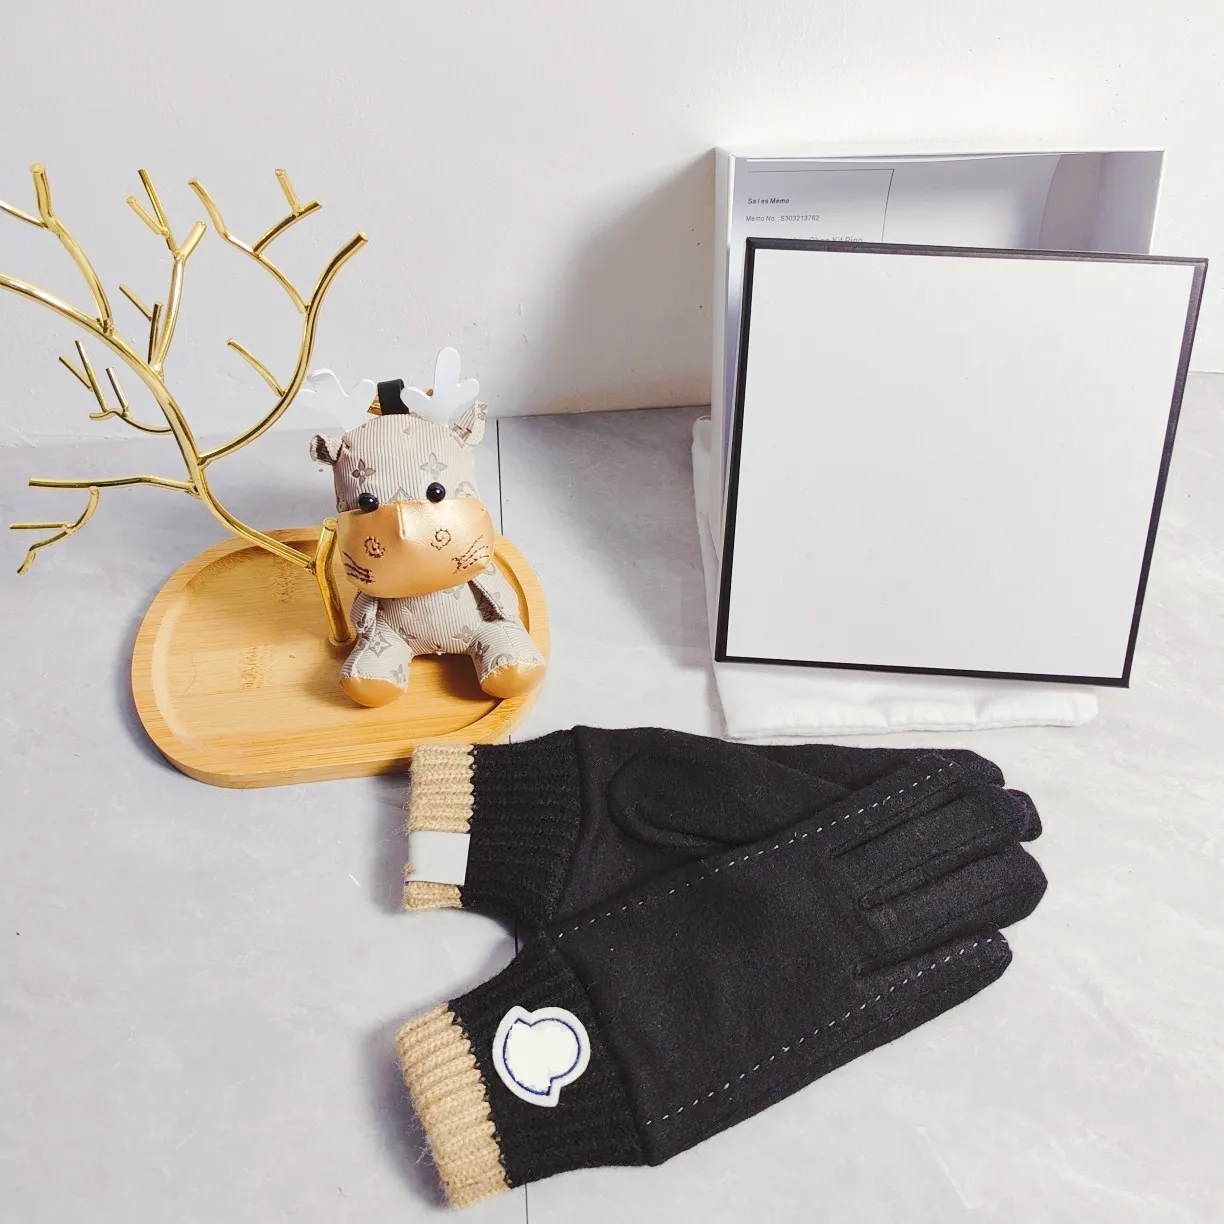 MO 2023 NCL R Counte New Poduct Wool Fashion Handschuhe Herbst und Winter Wam Plüschfutter Bequem weich Vesatile One Size Designe